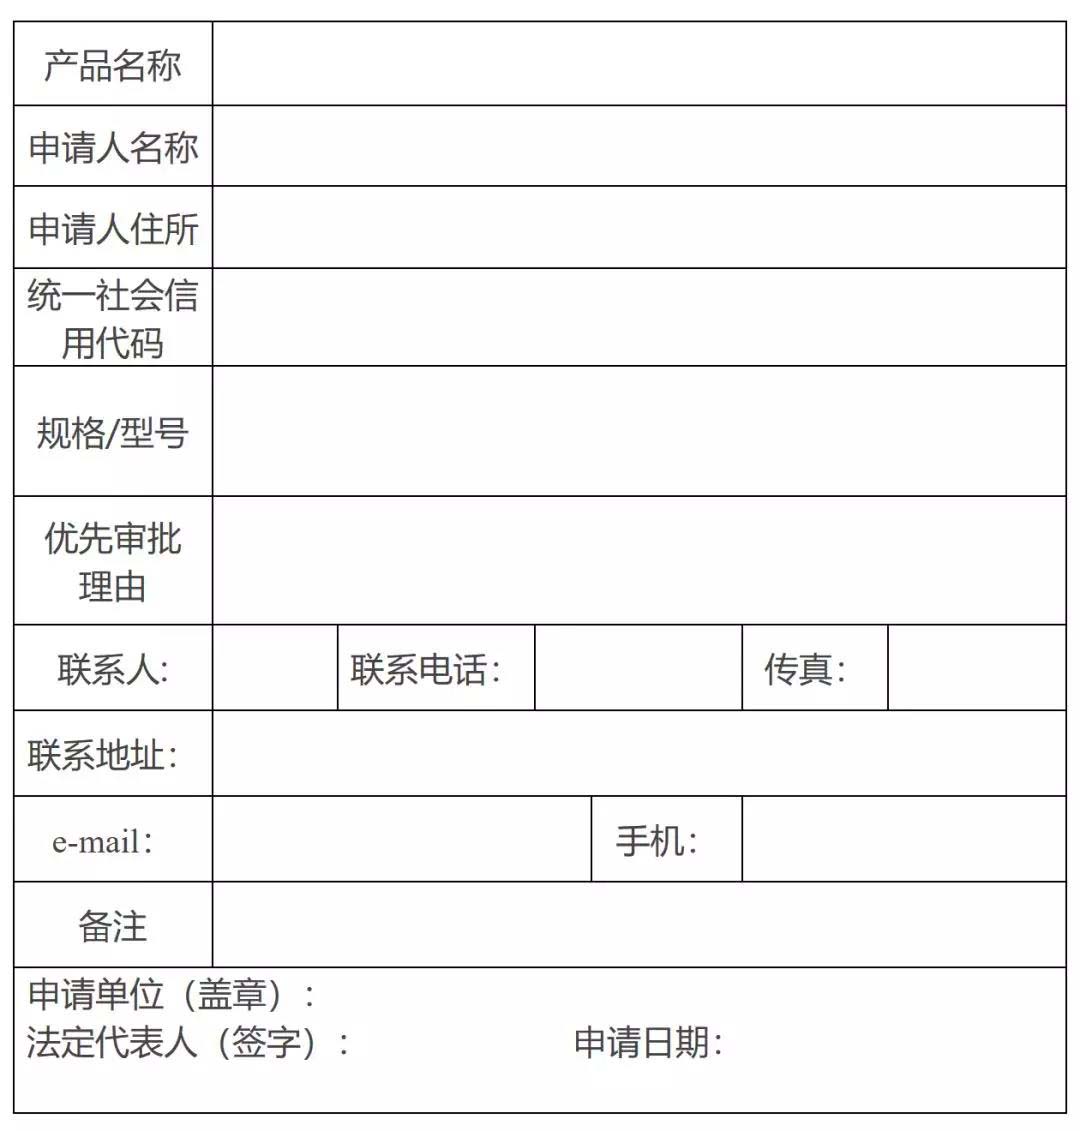  天津市第二类医疗器械优先审批申请表